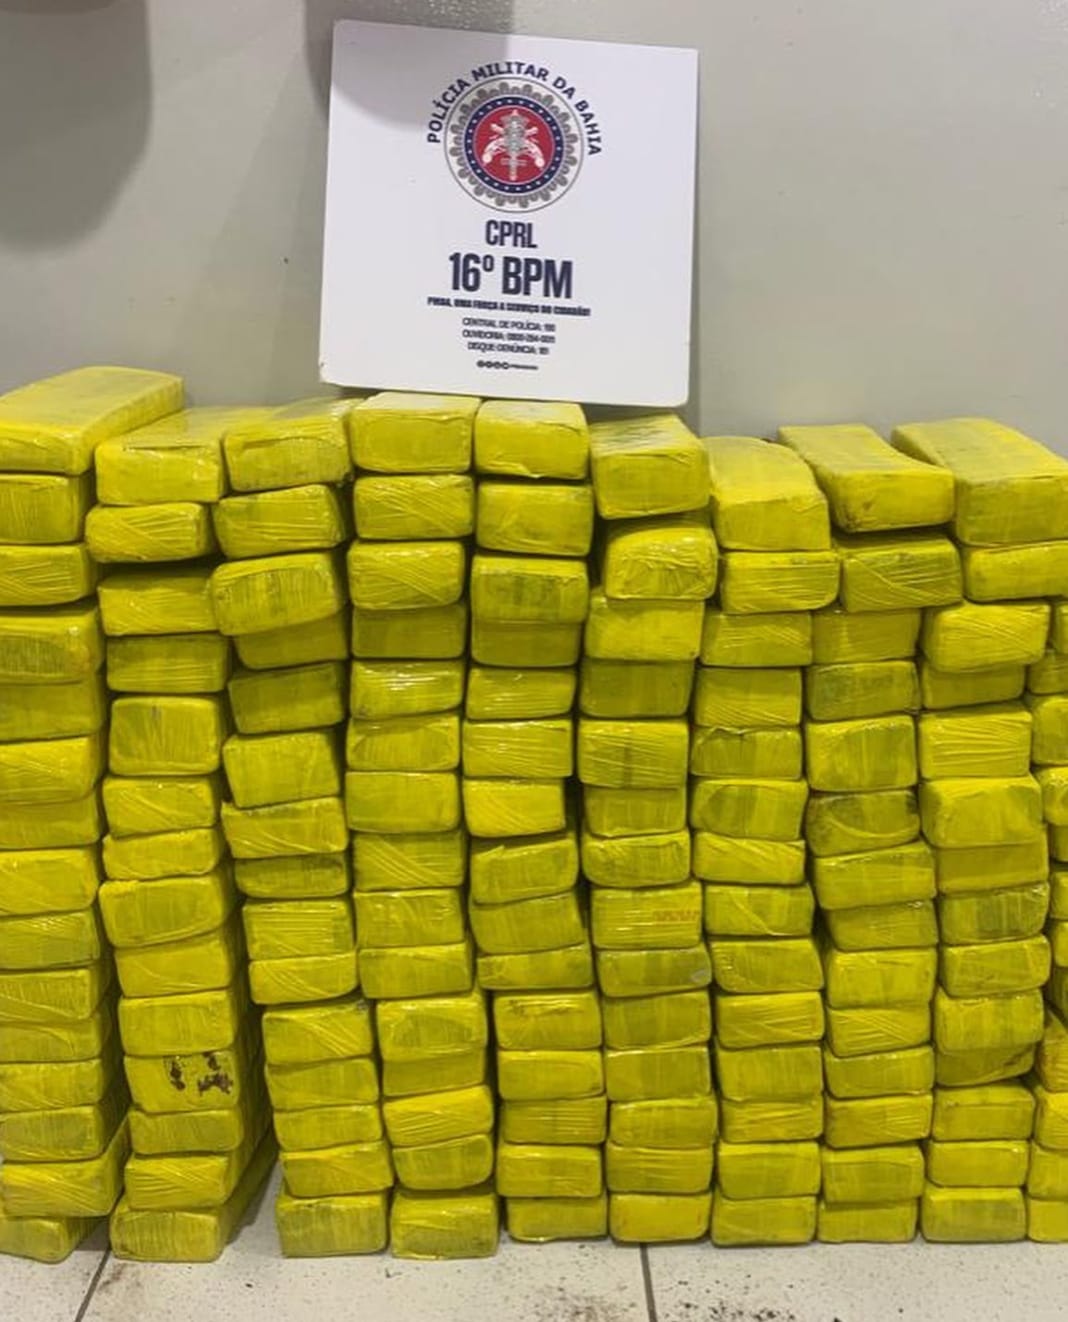 Foram apreendidos 143 tabletes de maconha, totalizando 130 kg da droga